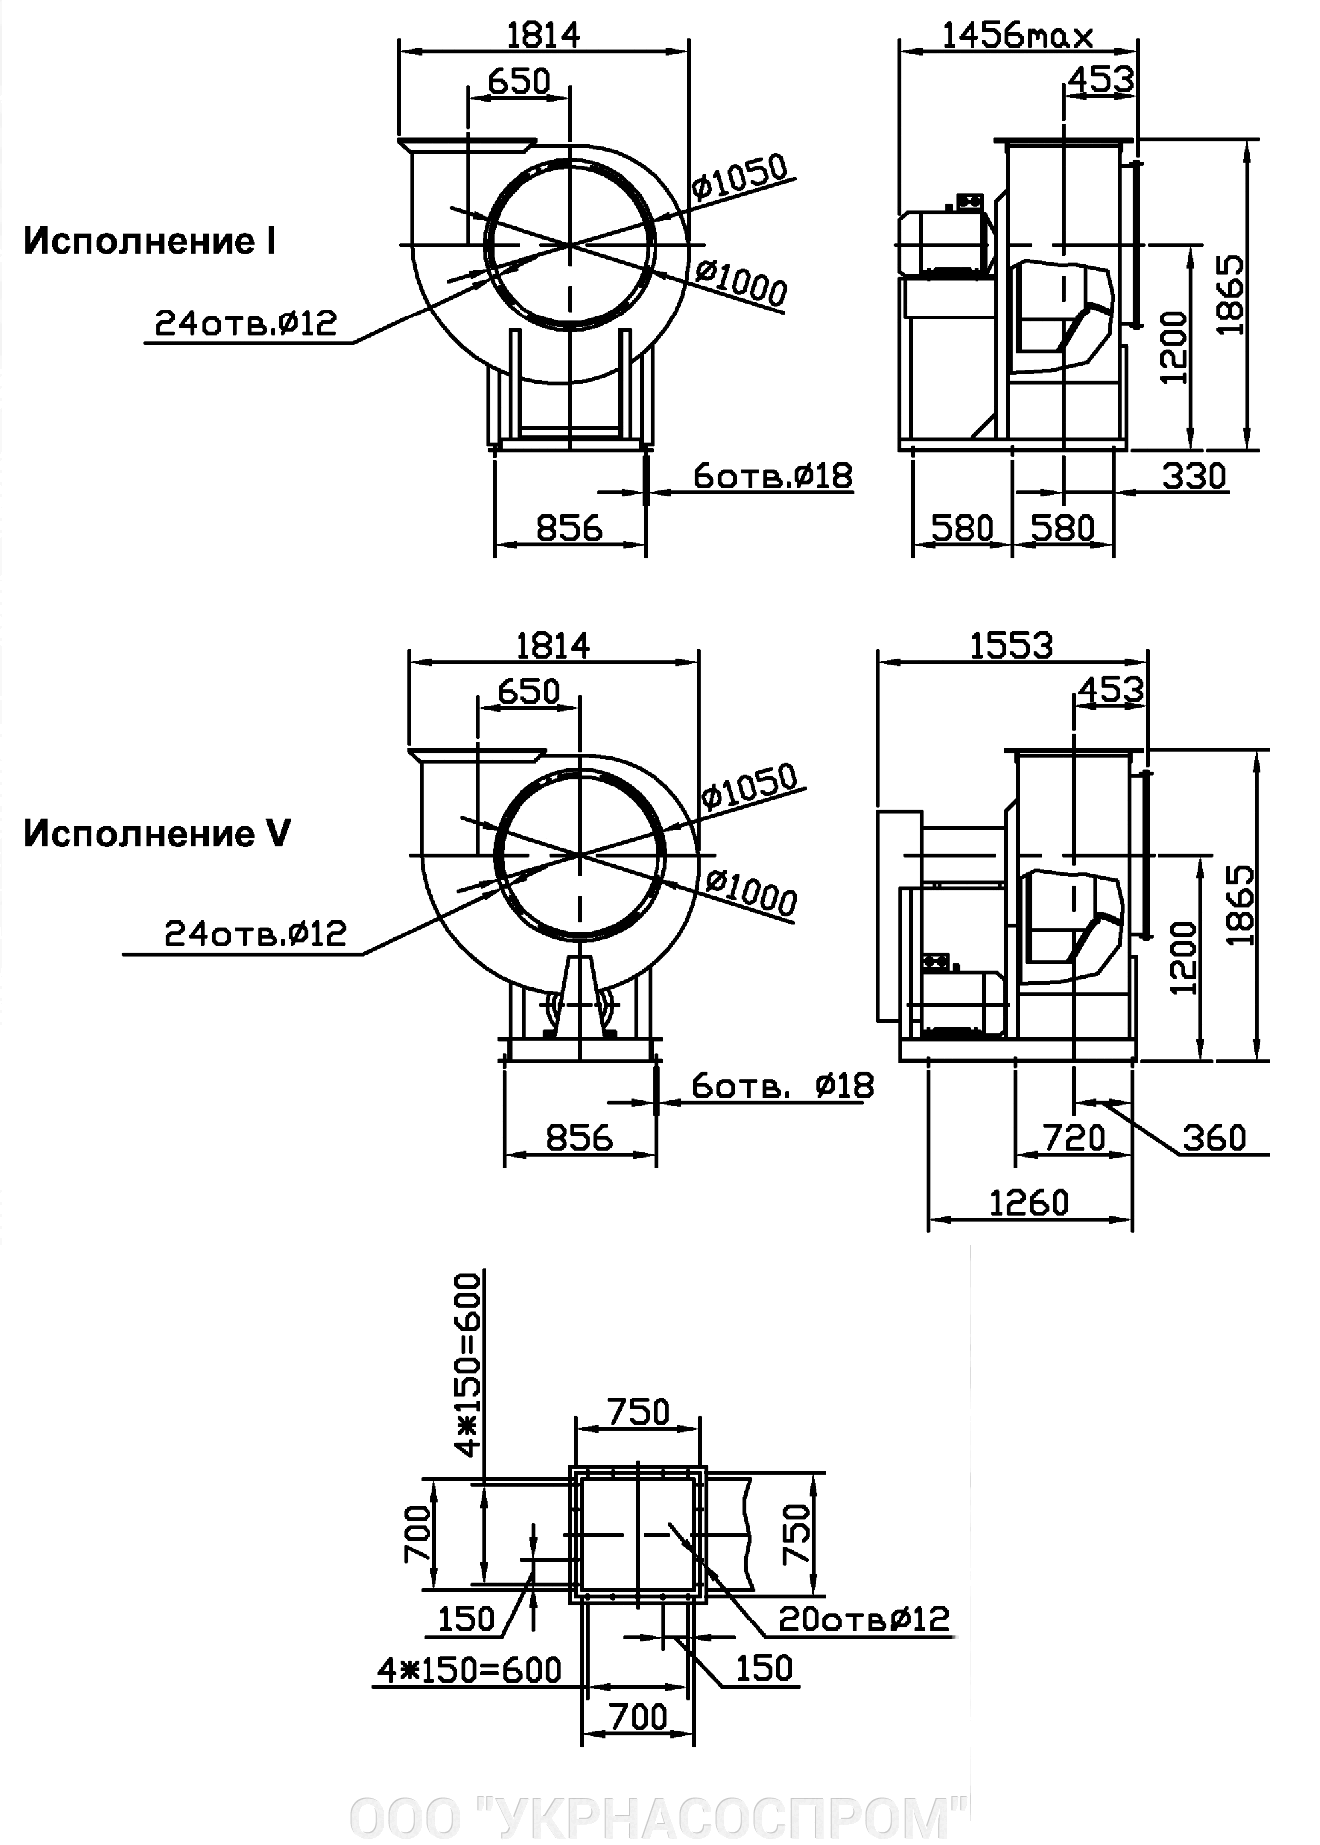 Вентилятор ВЦ 4-75 №10 22 кВт 1000 об/мин